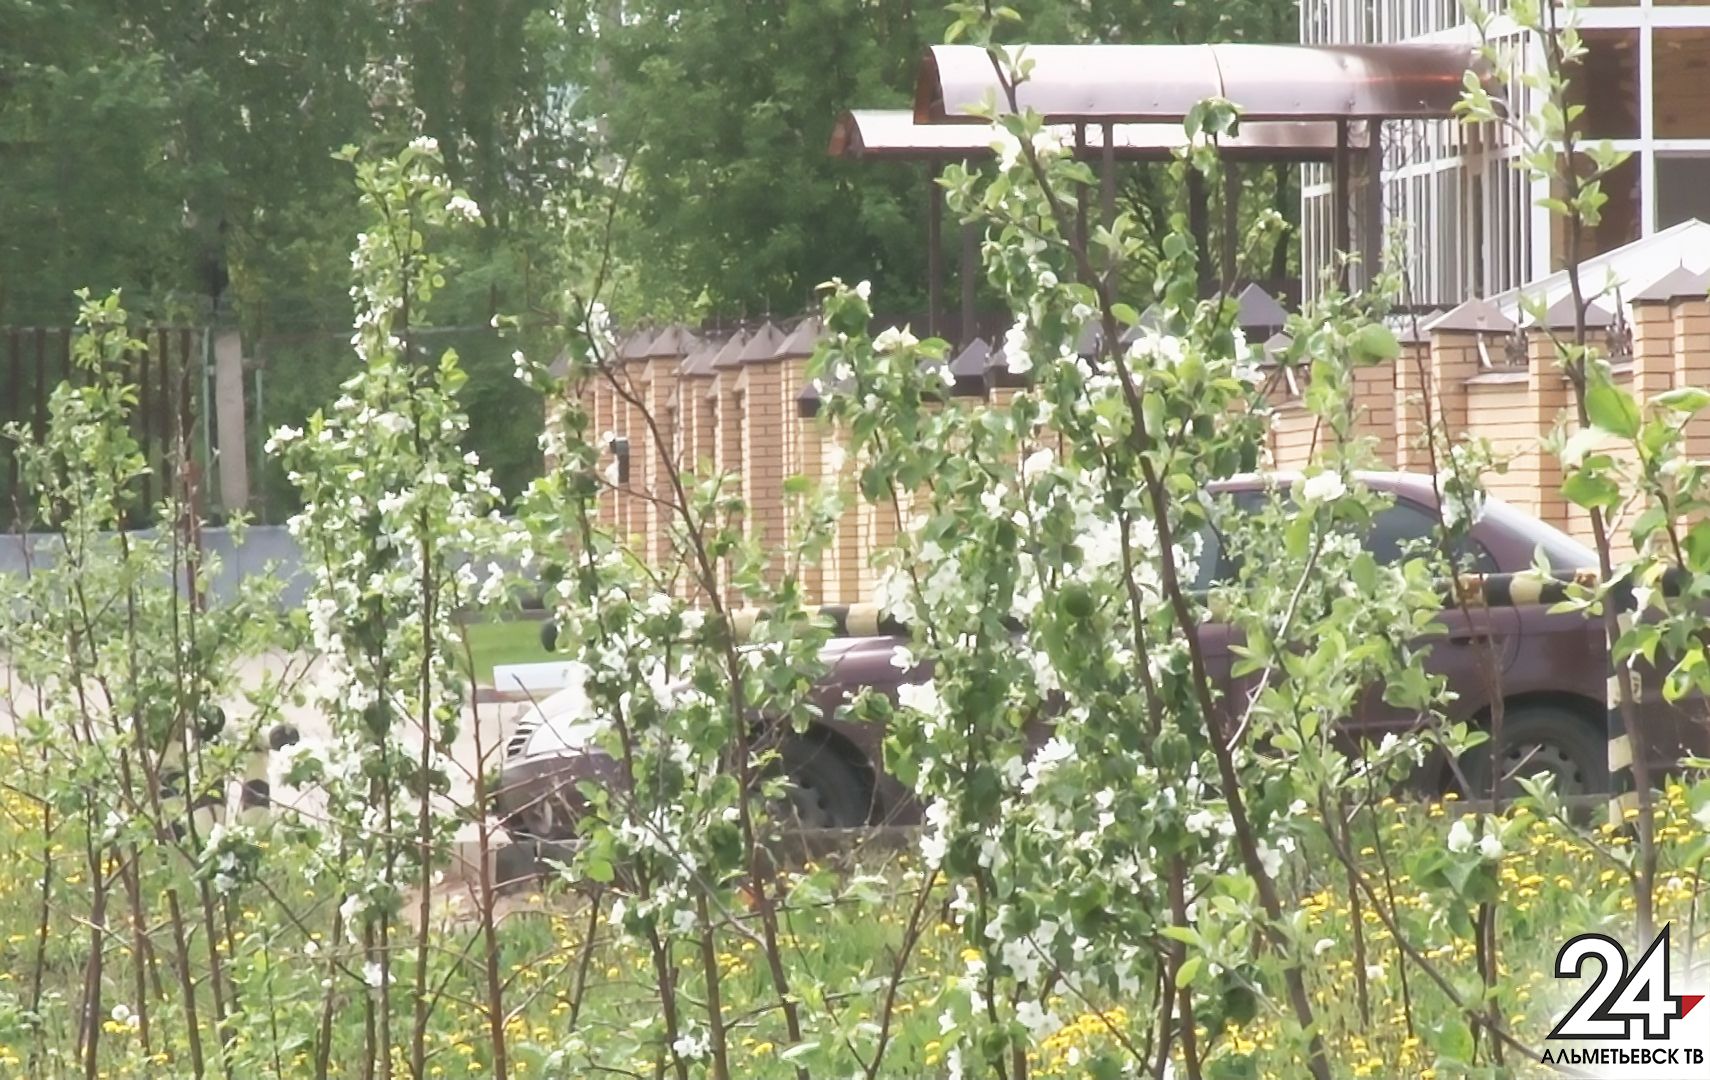 Альметьевск превратился в цветущий яблоневый сад